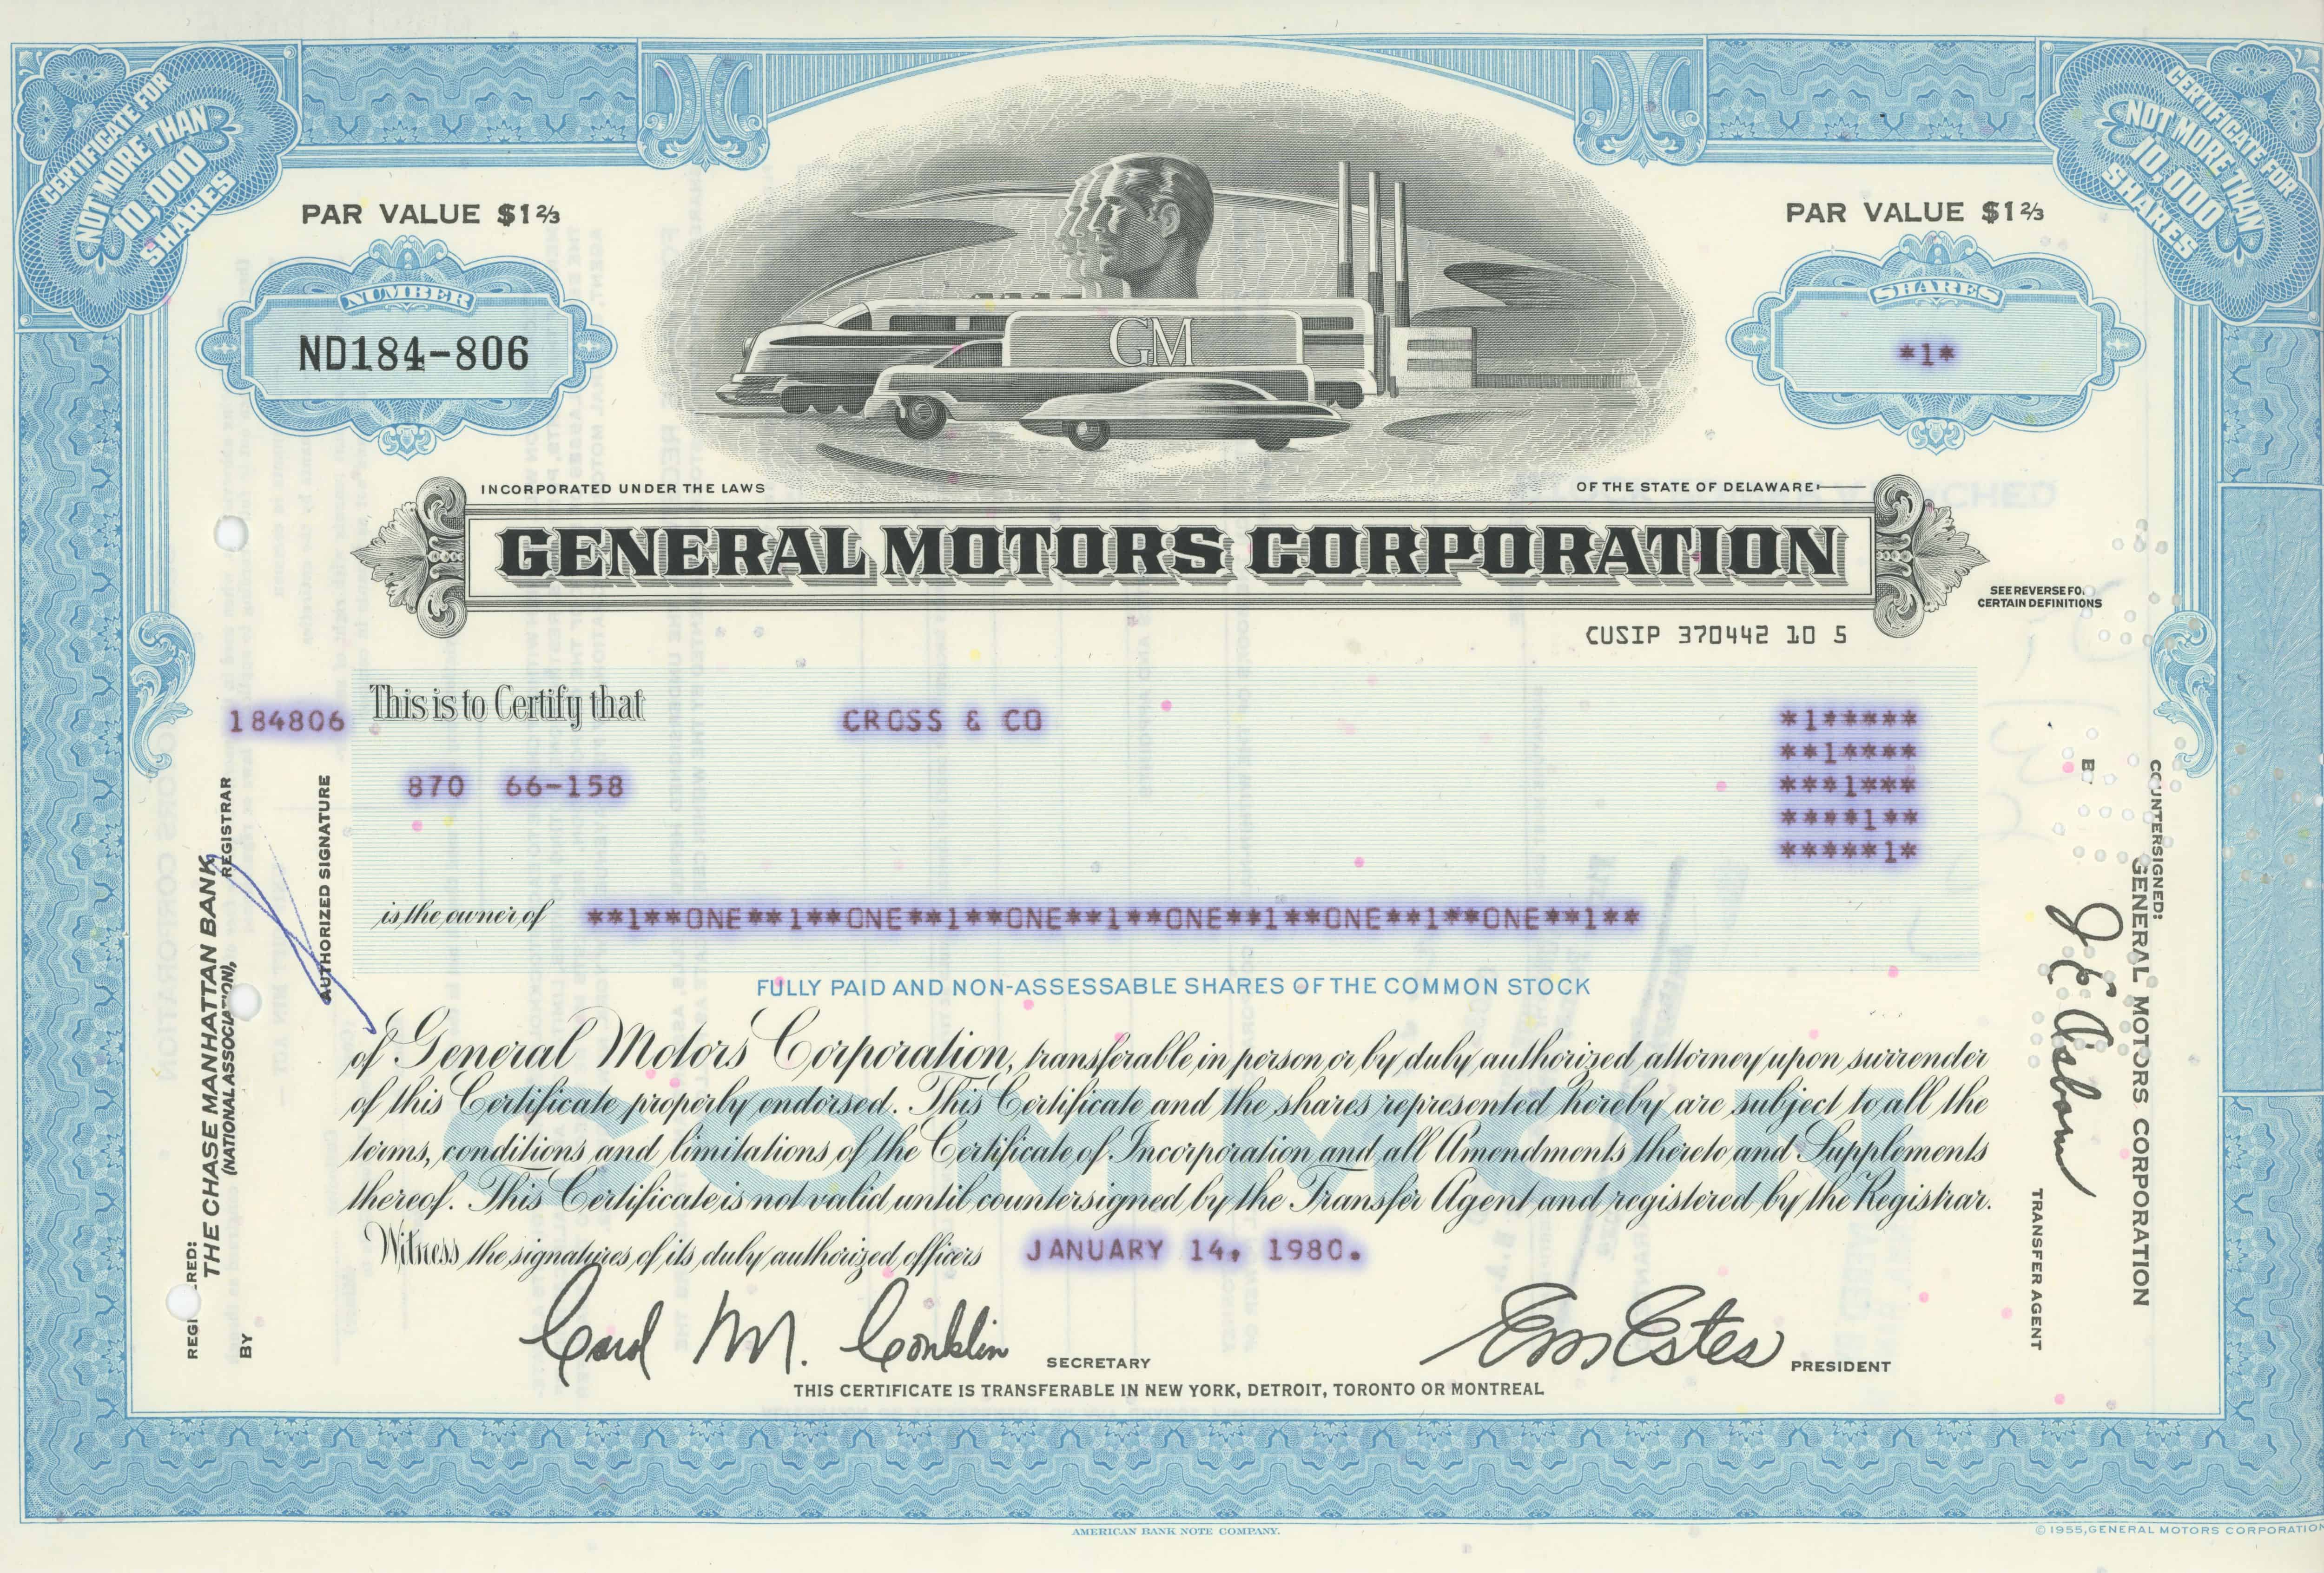 1 akcja General Motors Corporation z 14 stycznia 1980 roku